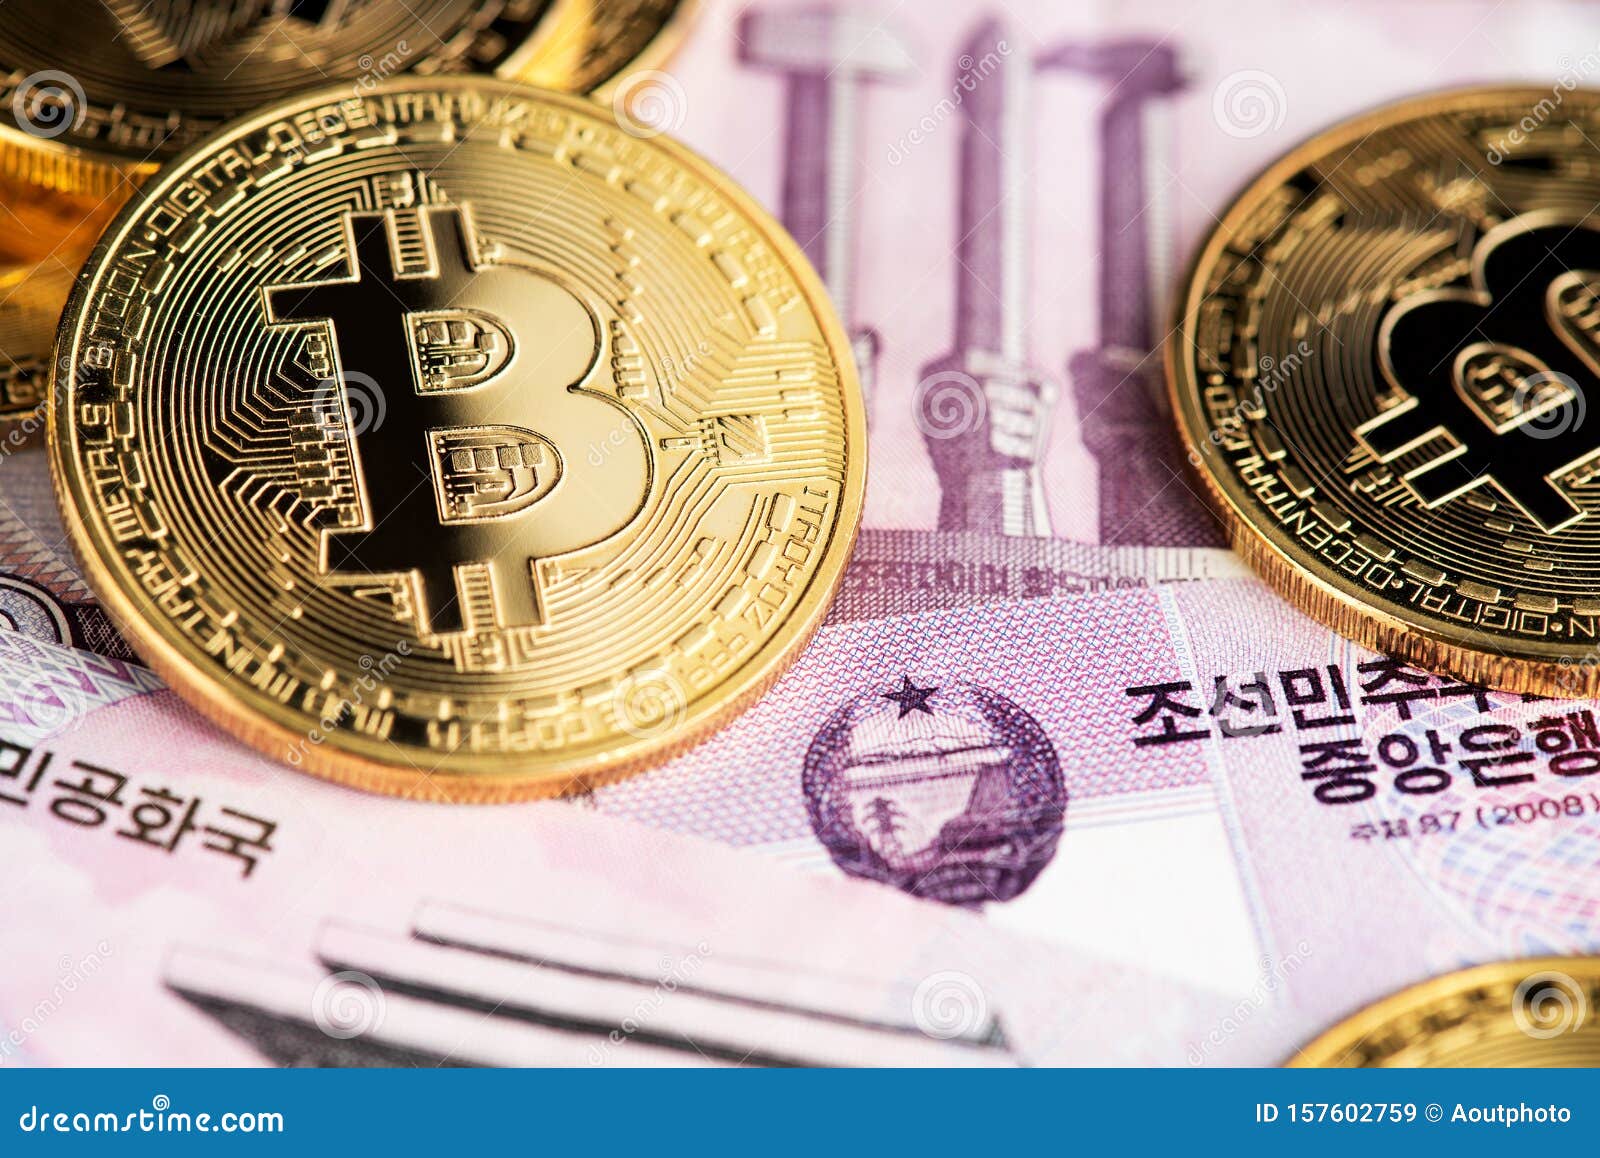 Bitcoin este din nou în scădere puternică după ce Coreea de Sud | femeiademaine.ro